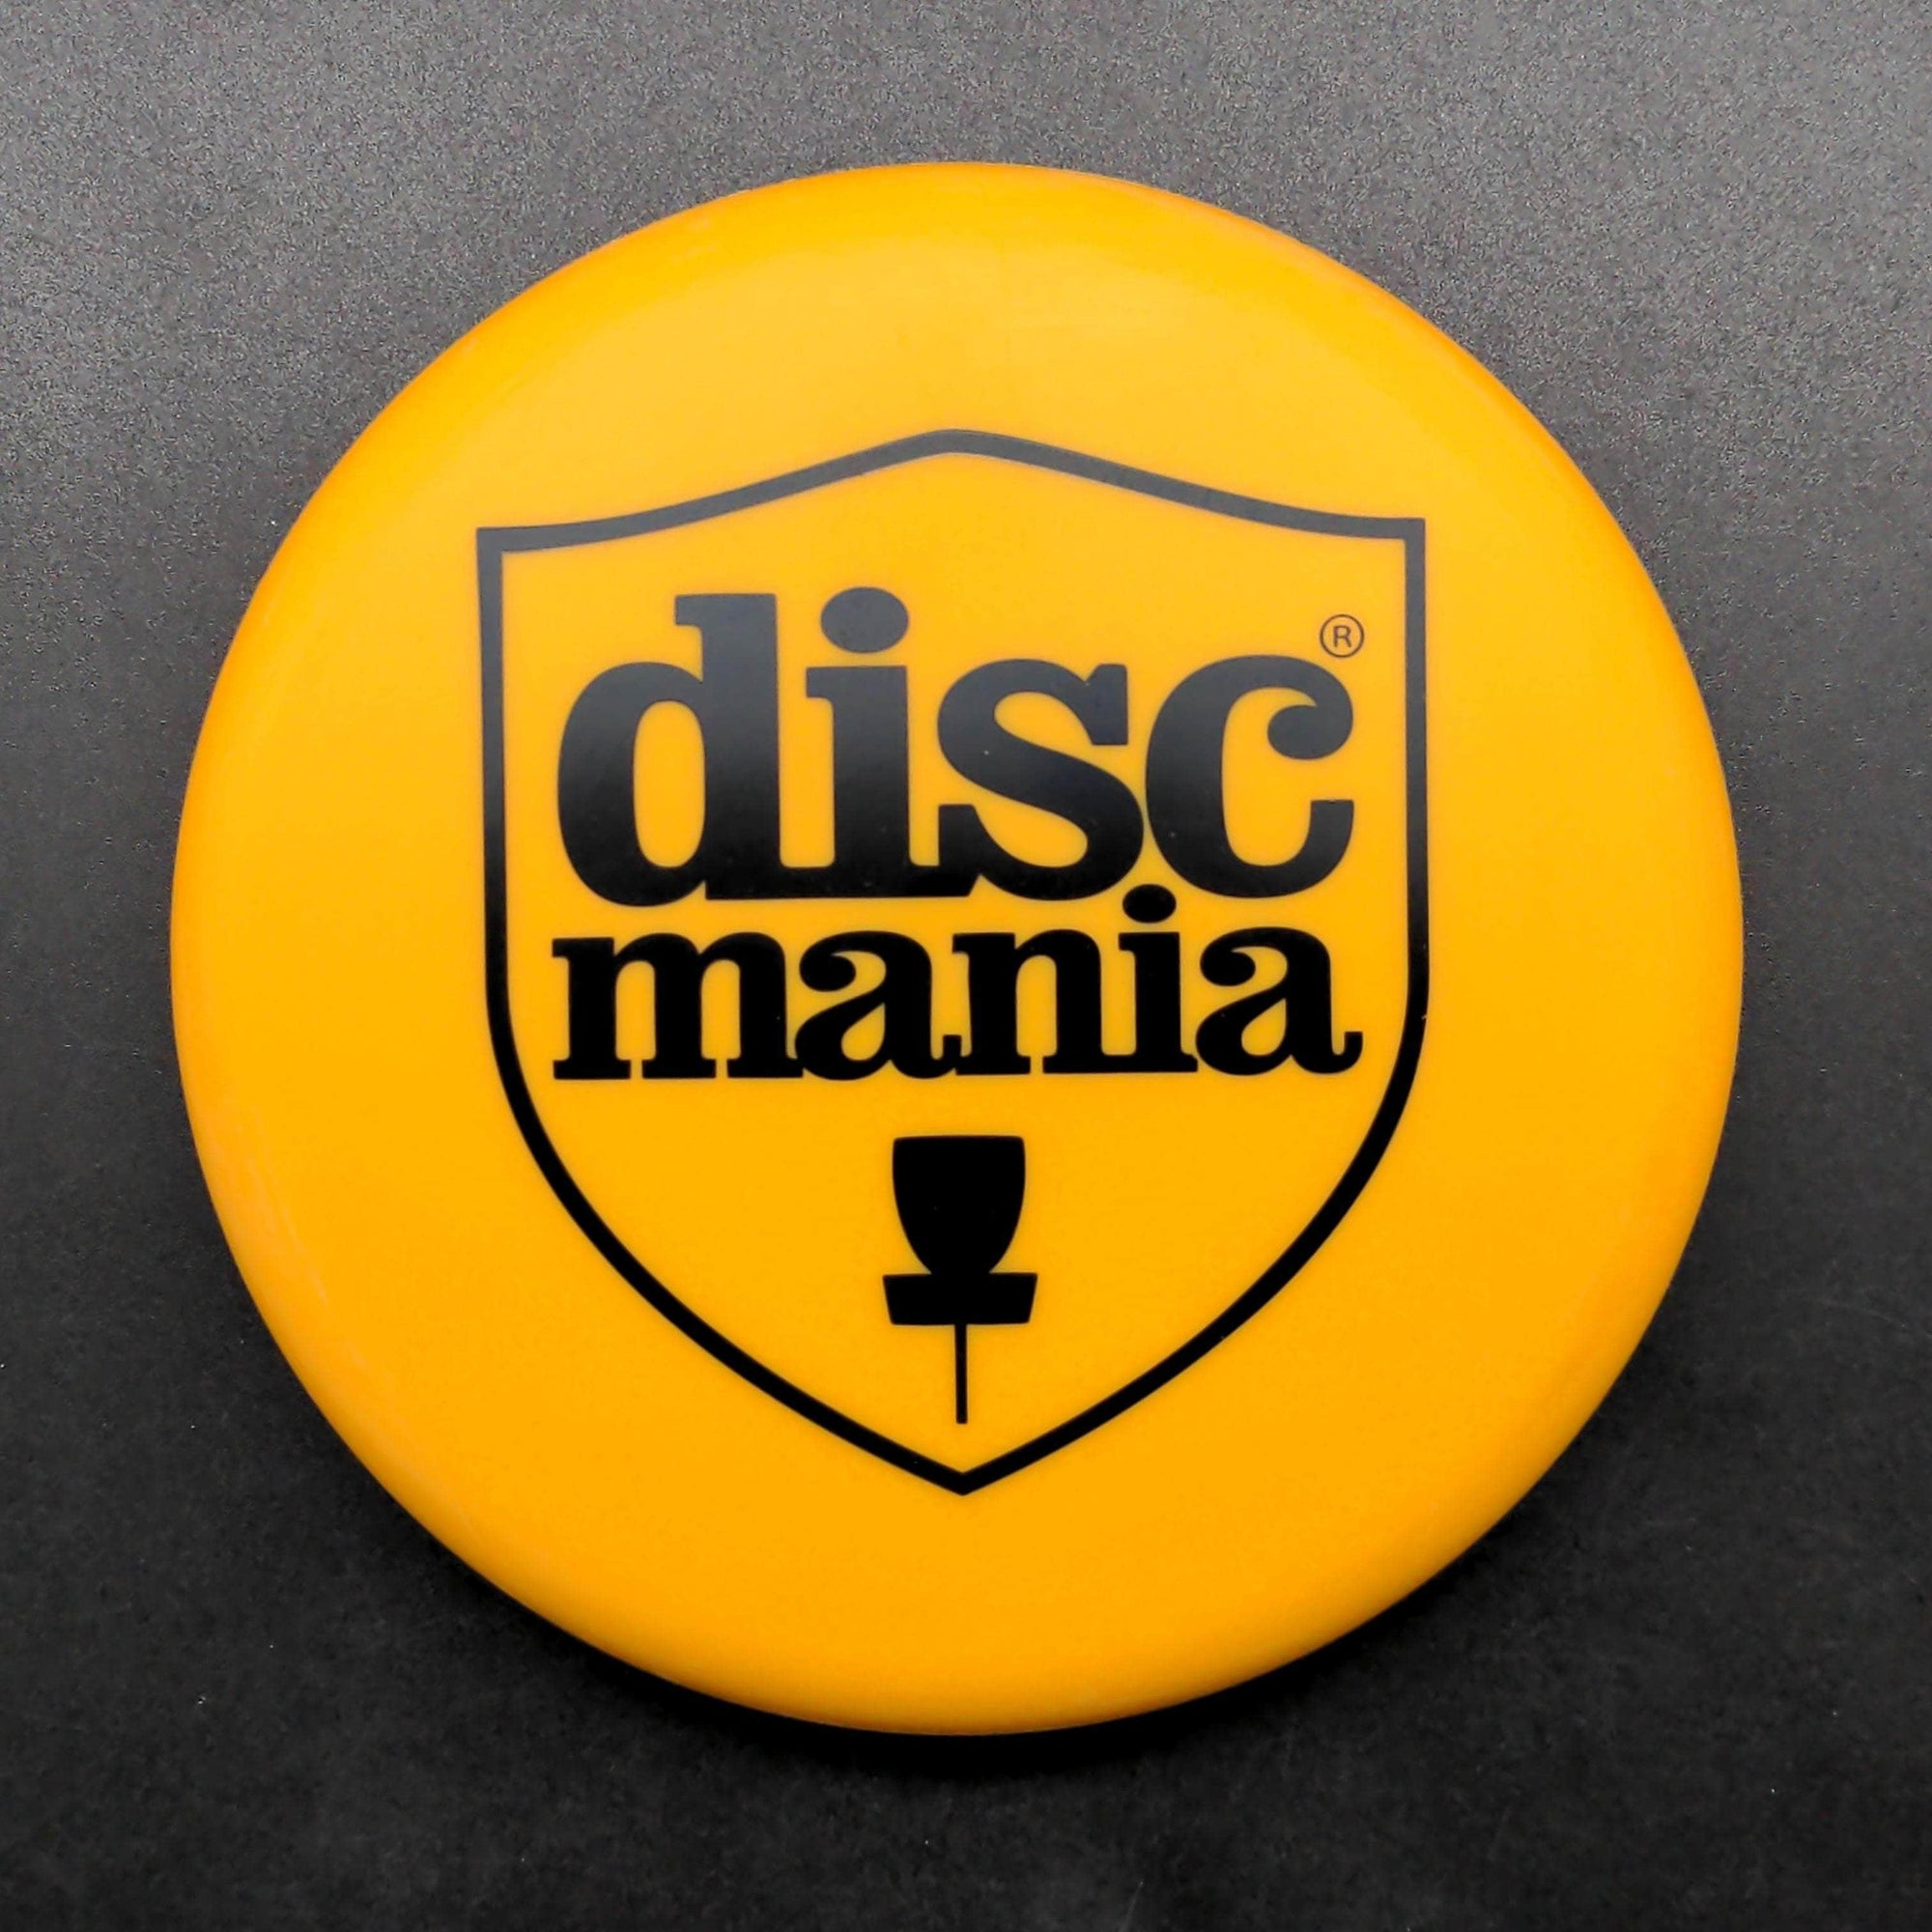 Discmania accessories Orange 8 Mini Marker, Discmania